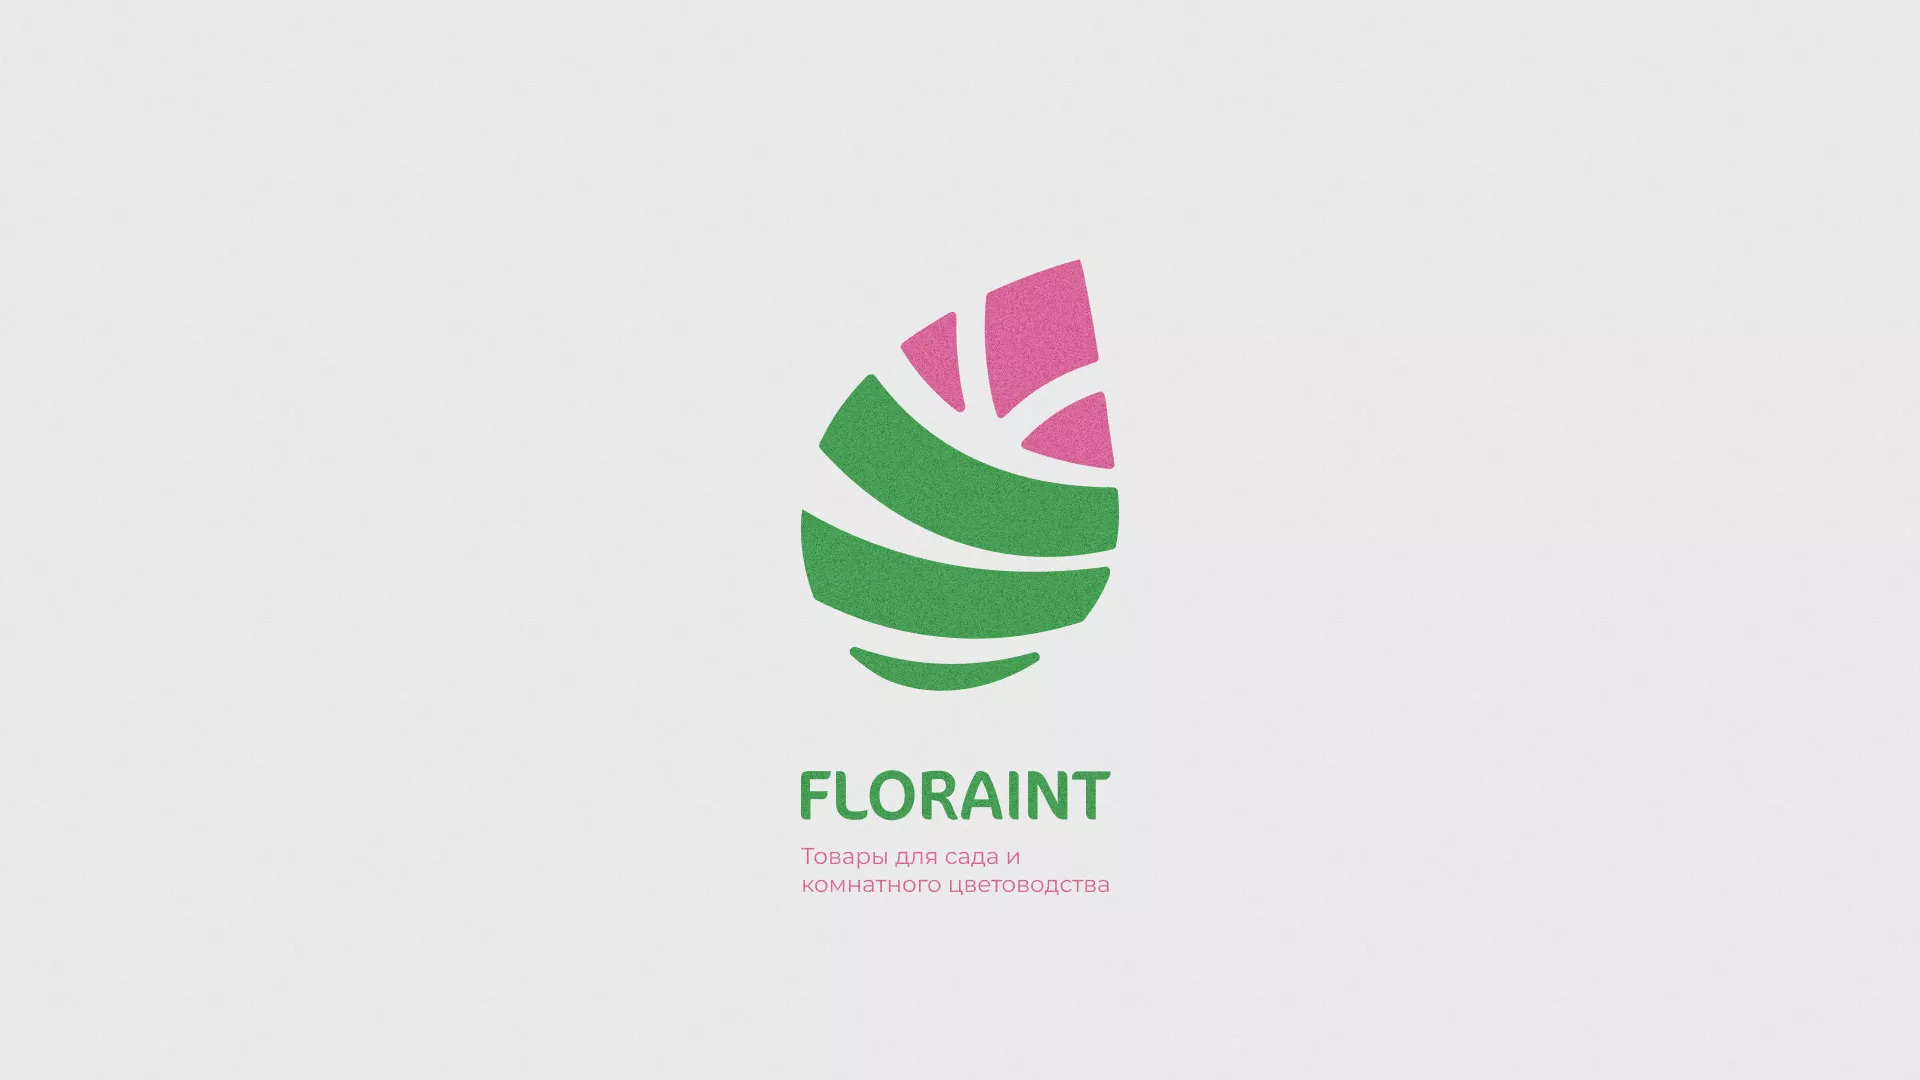 Разработка оформления профиля Instagram для магазина «Floraint» в Ладушкине